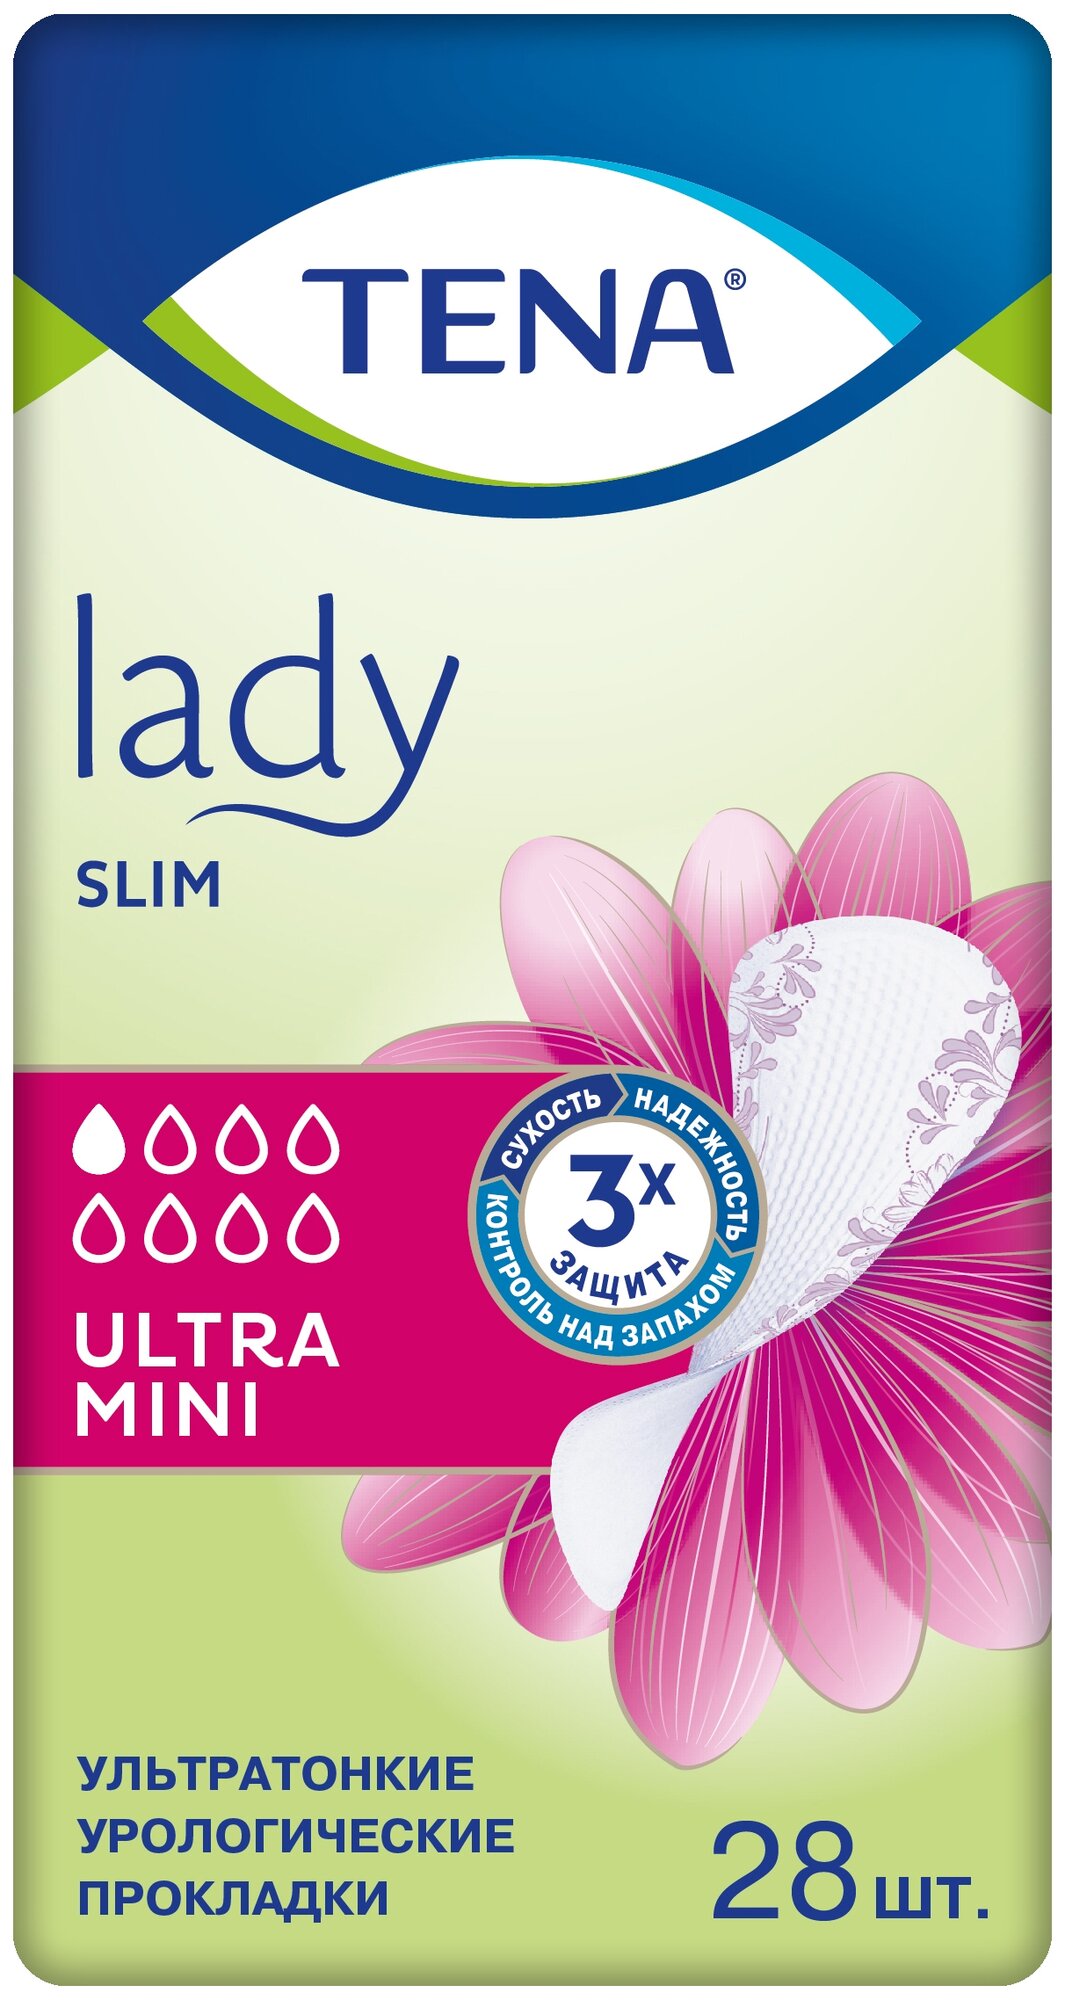 Урологические прокладки TENA Lady Slim Ultra Mini, 1 капель, 1 уп. по 28 шт.